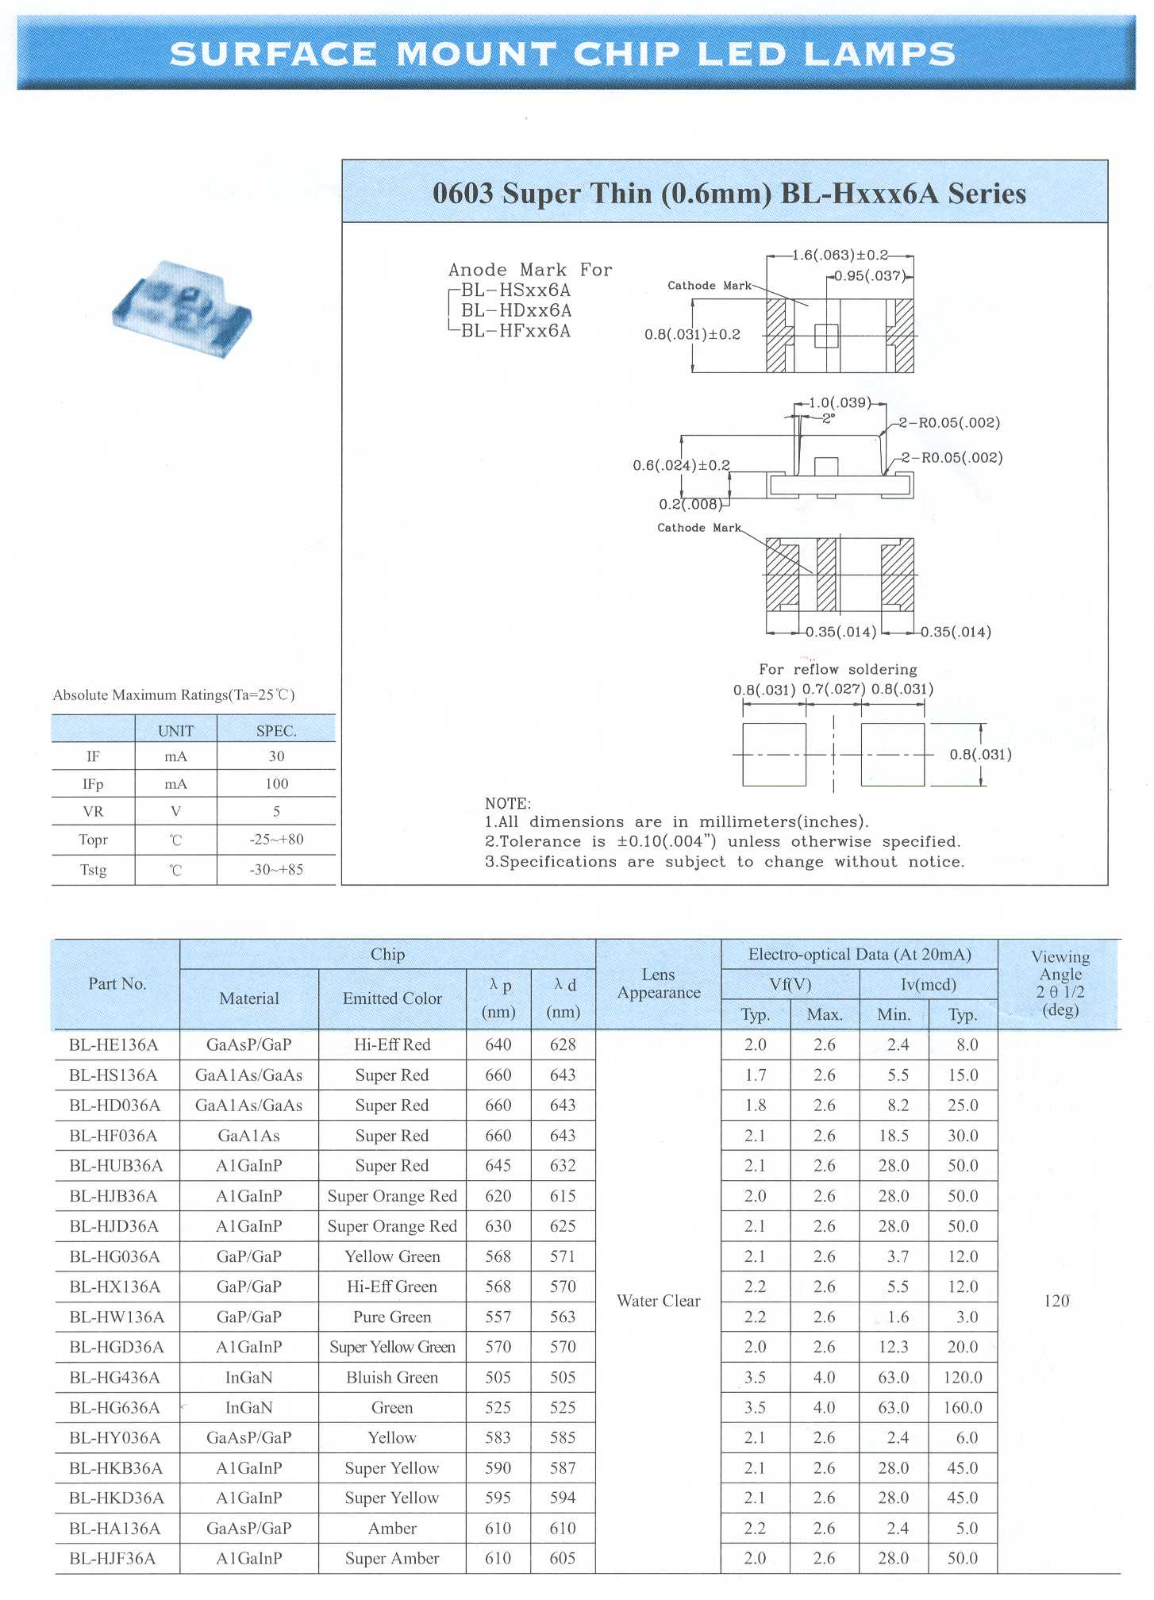 YELLOW STONE CORP BL-HX136A, BL-HUB36A, BL-HS136A, BL-HKB36A, BL-HGD36A Datasheet